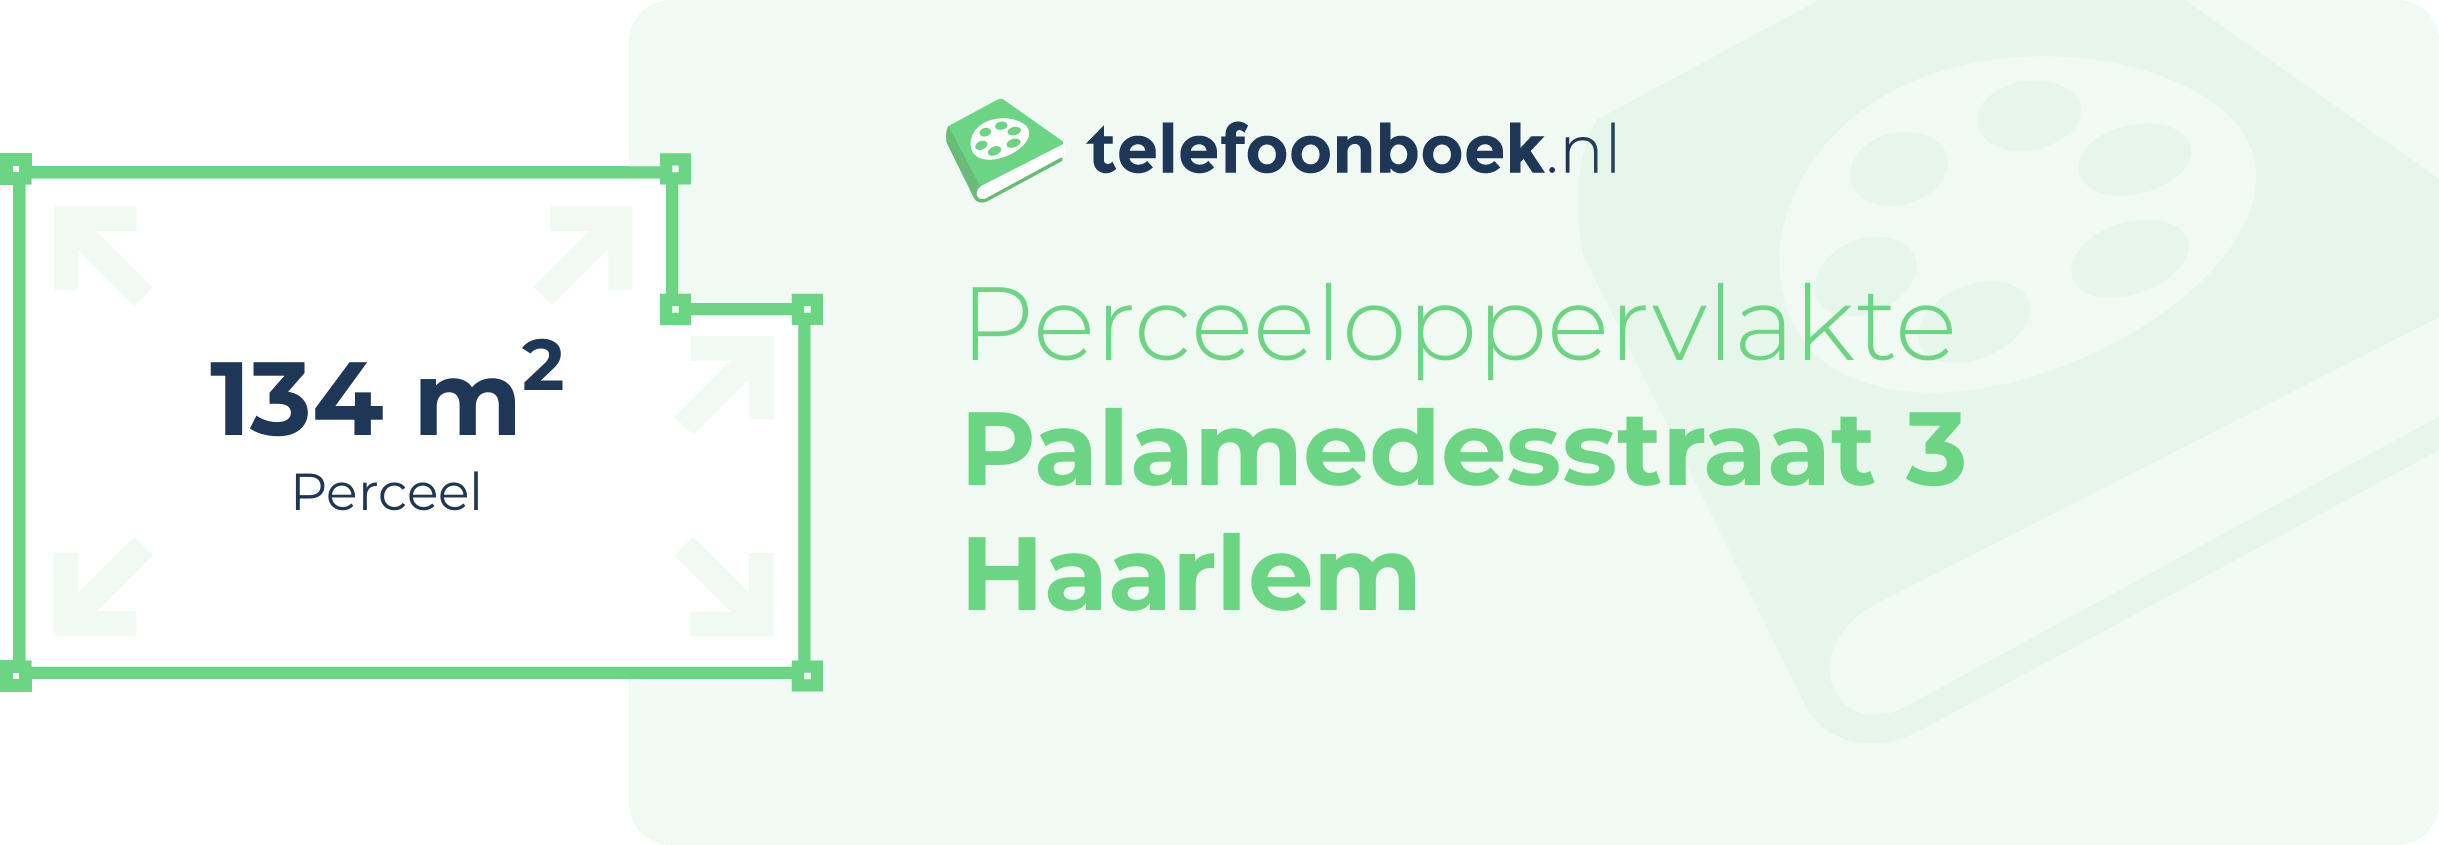 Perceeloppervlakte Palamedesstraat 3 Haarlem